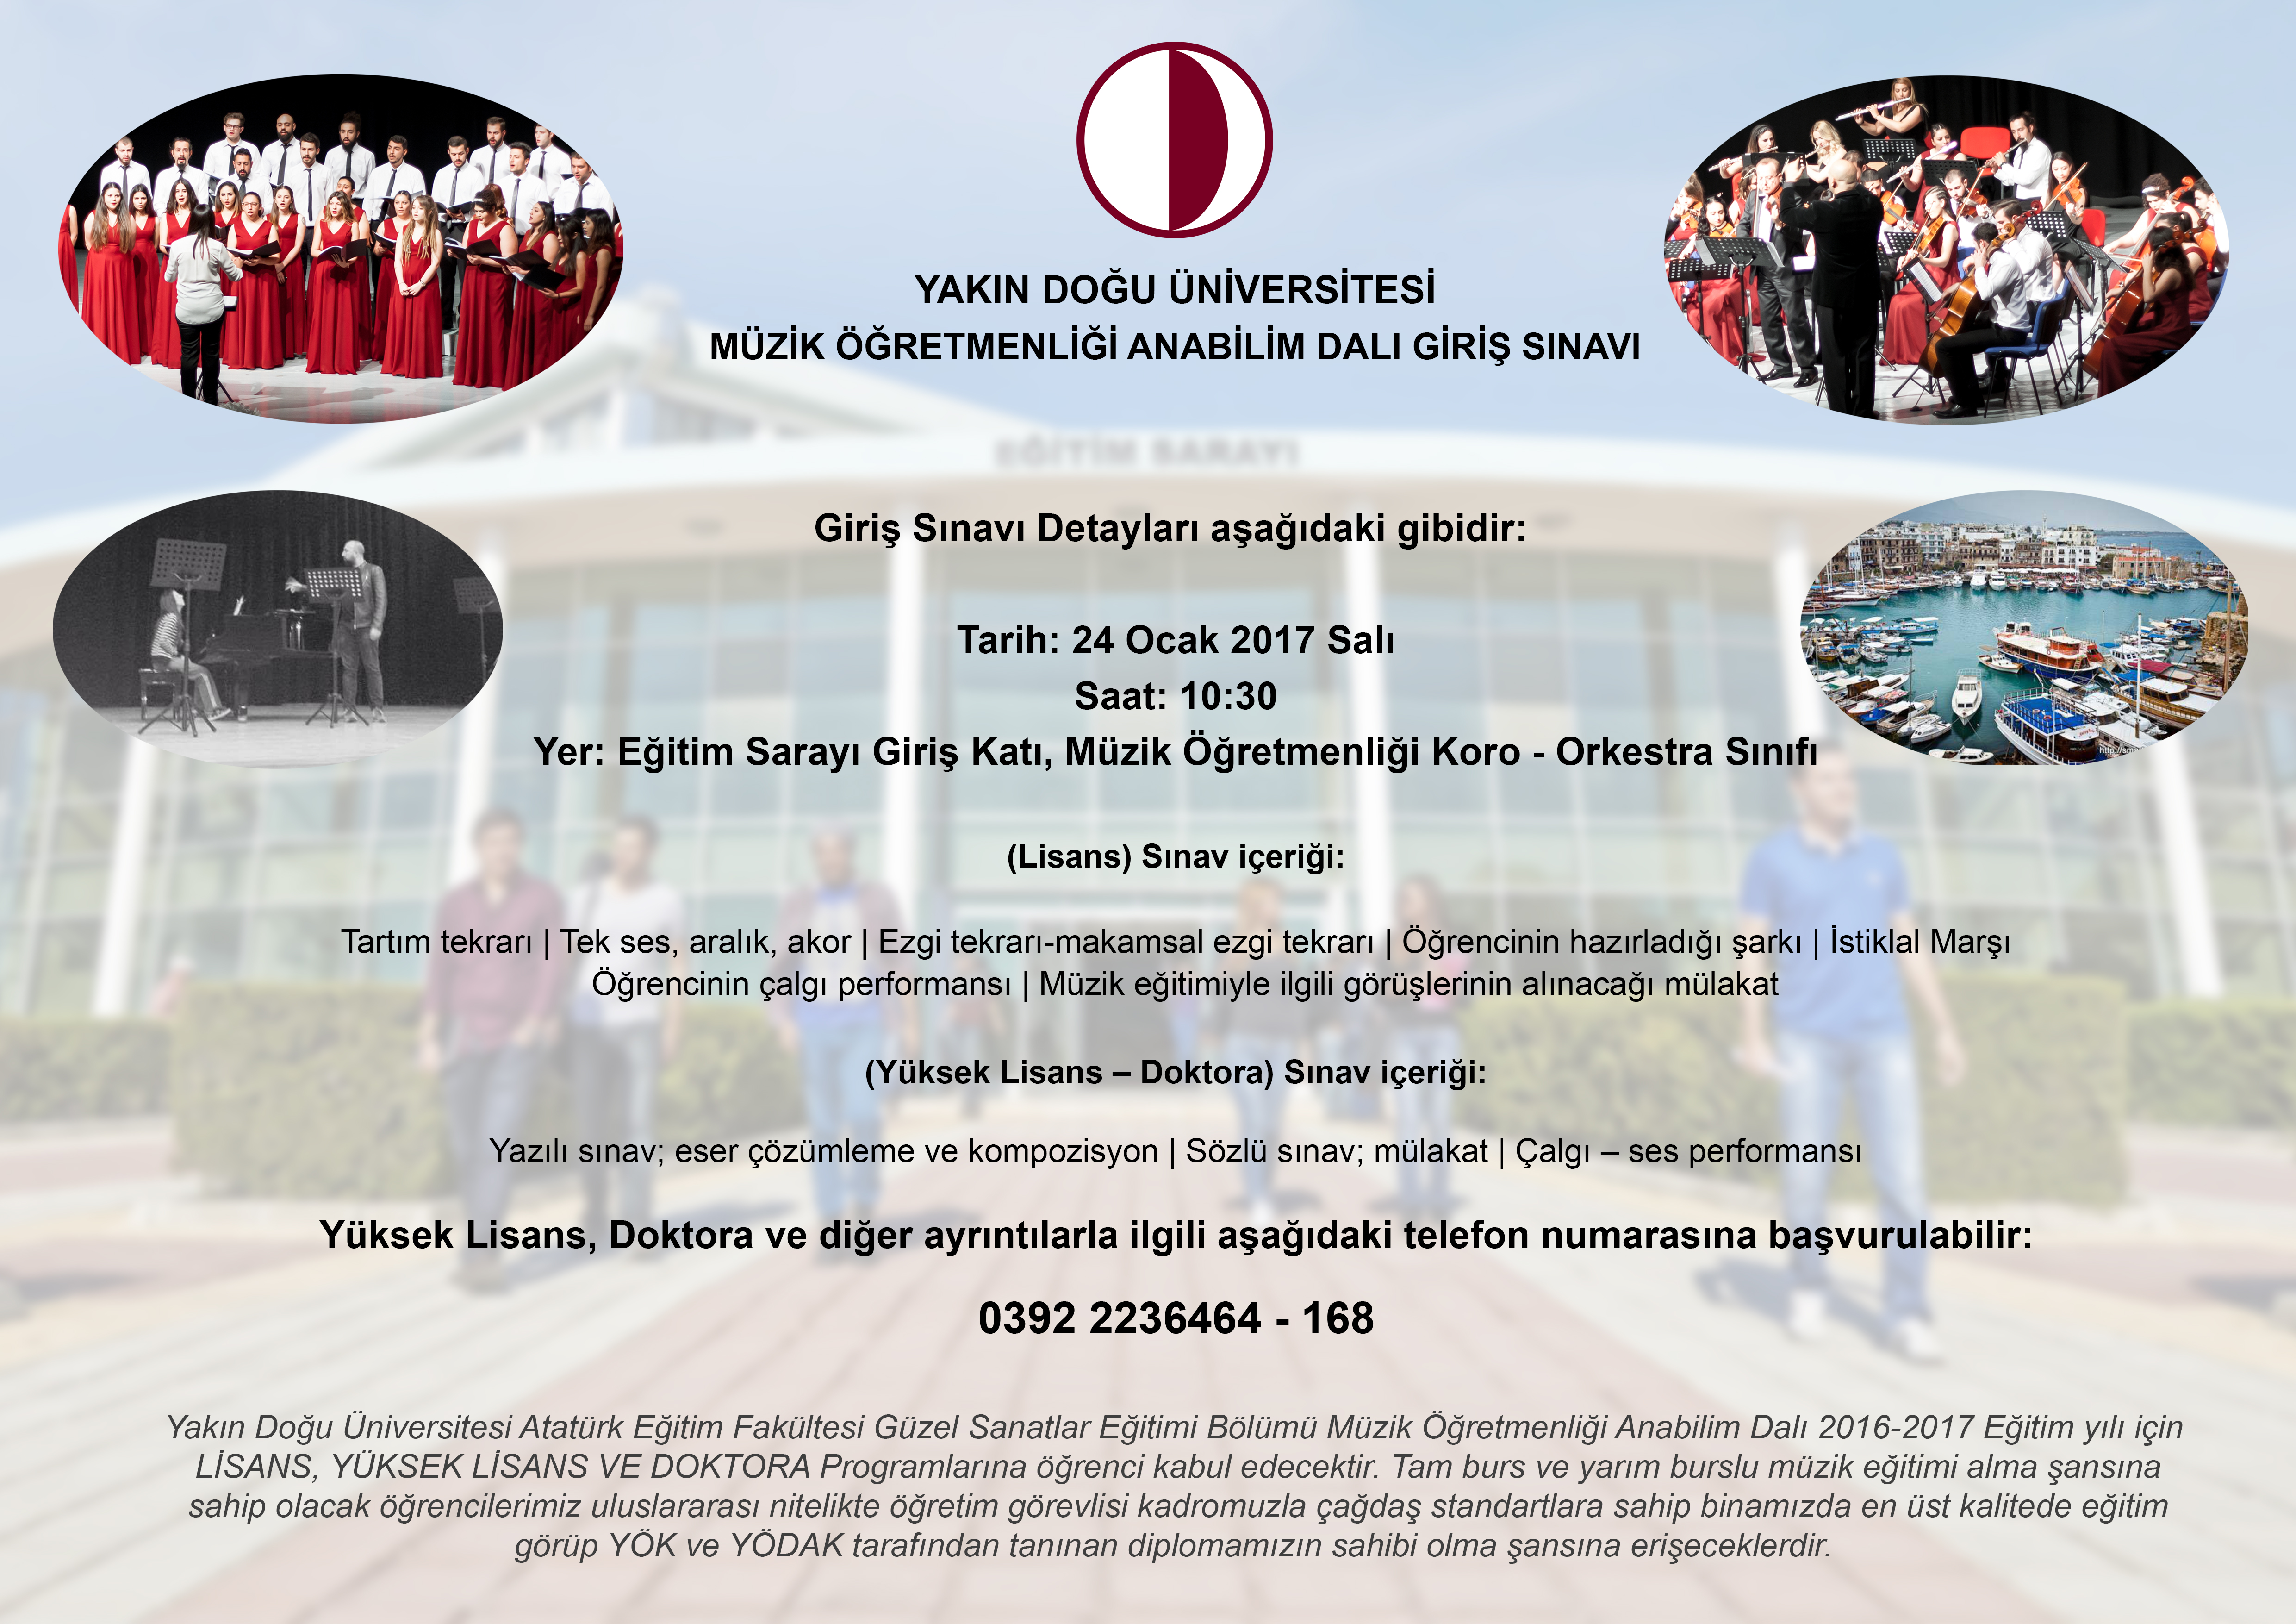 YDÜ Atatürk Eğitim Fakültesi, Güzel Sanatlar Eğitimi Bölümü Müzik Öğretmenliği Anabilim Dalı’na Özel Yetenek Sınavı ile Öğrenci Alınacaktır